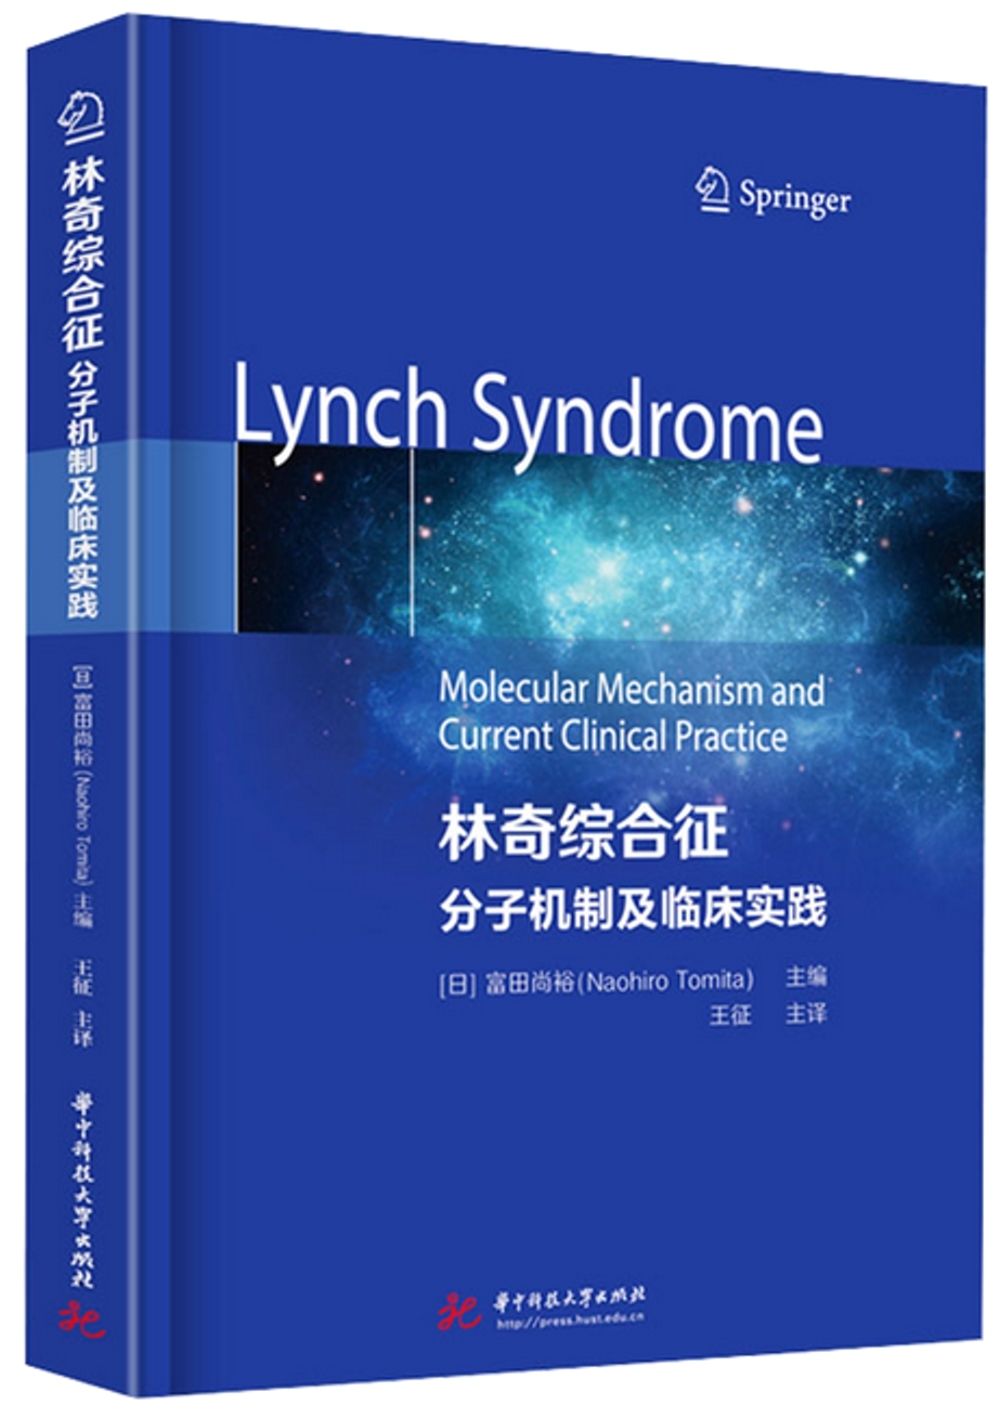 林奇綜合征：分子機制及臨床實踐